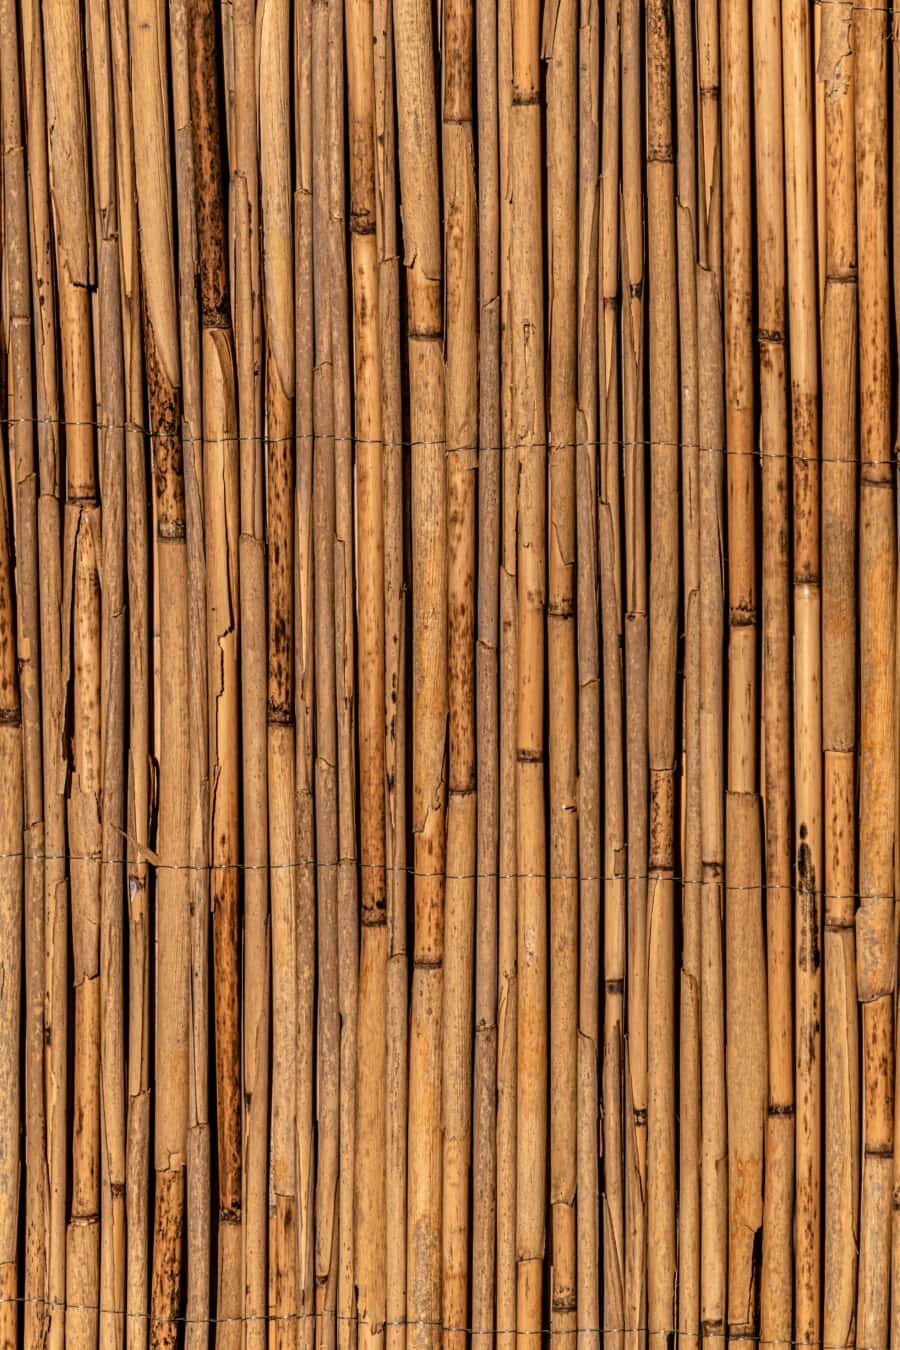 bark, vass, vertikala, detalj, material, konsistens, ytan, gammal stil, ljus brun, bark